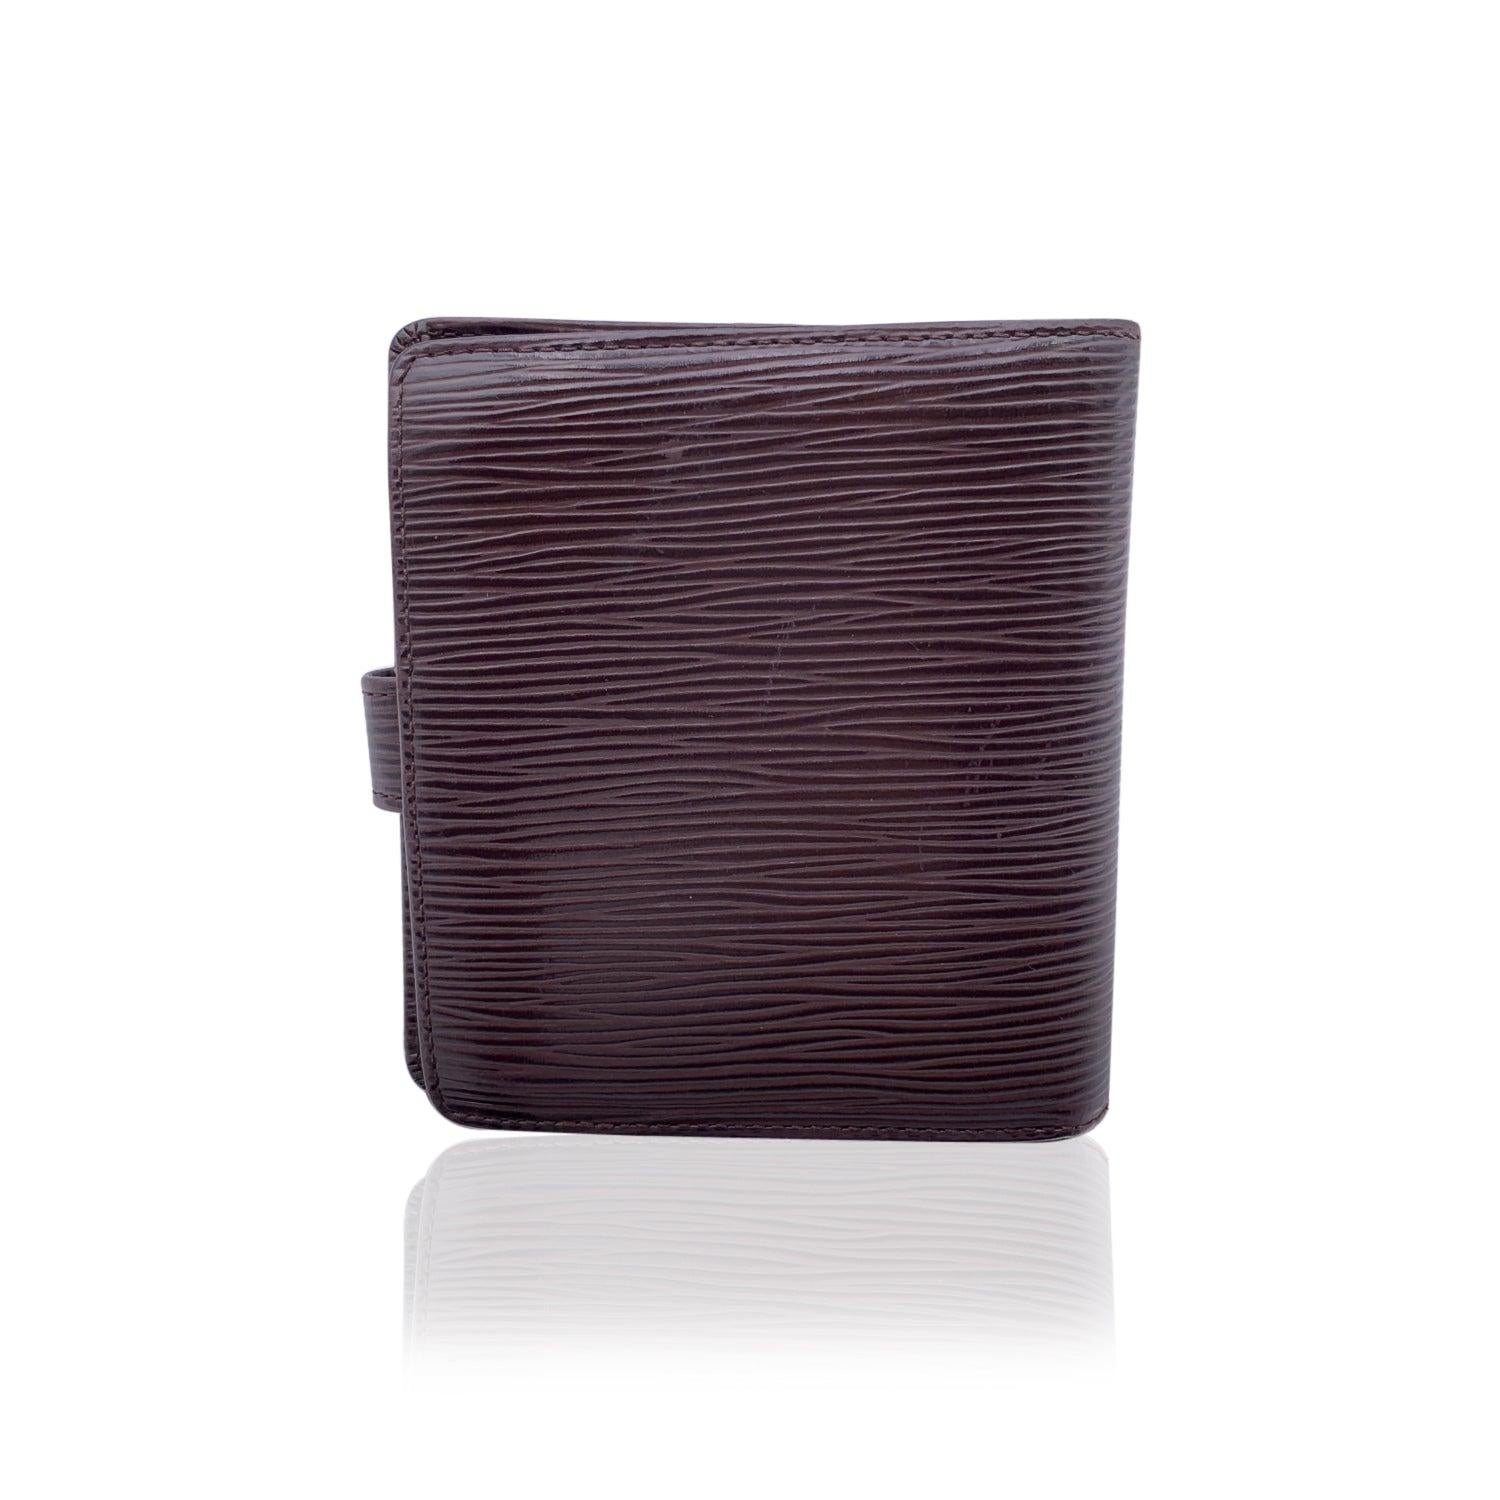 Louis Vuitton Vintage braun Epi Leder Compact Brieftasche. Sie verfügt über 4 Kreditkartenfächer, 2 offene Fächer, 1 Münzfach und 1 Geldscheinfach. Innen eingraviert: 